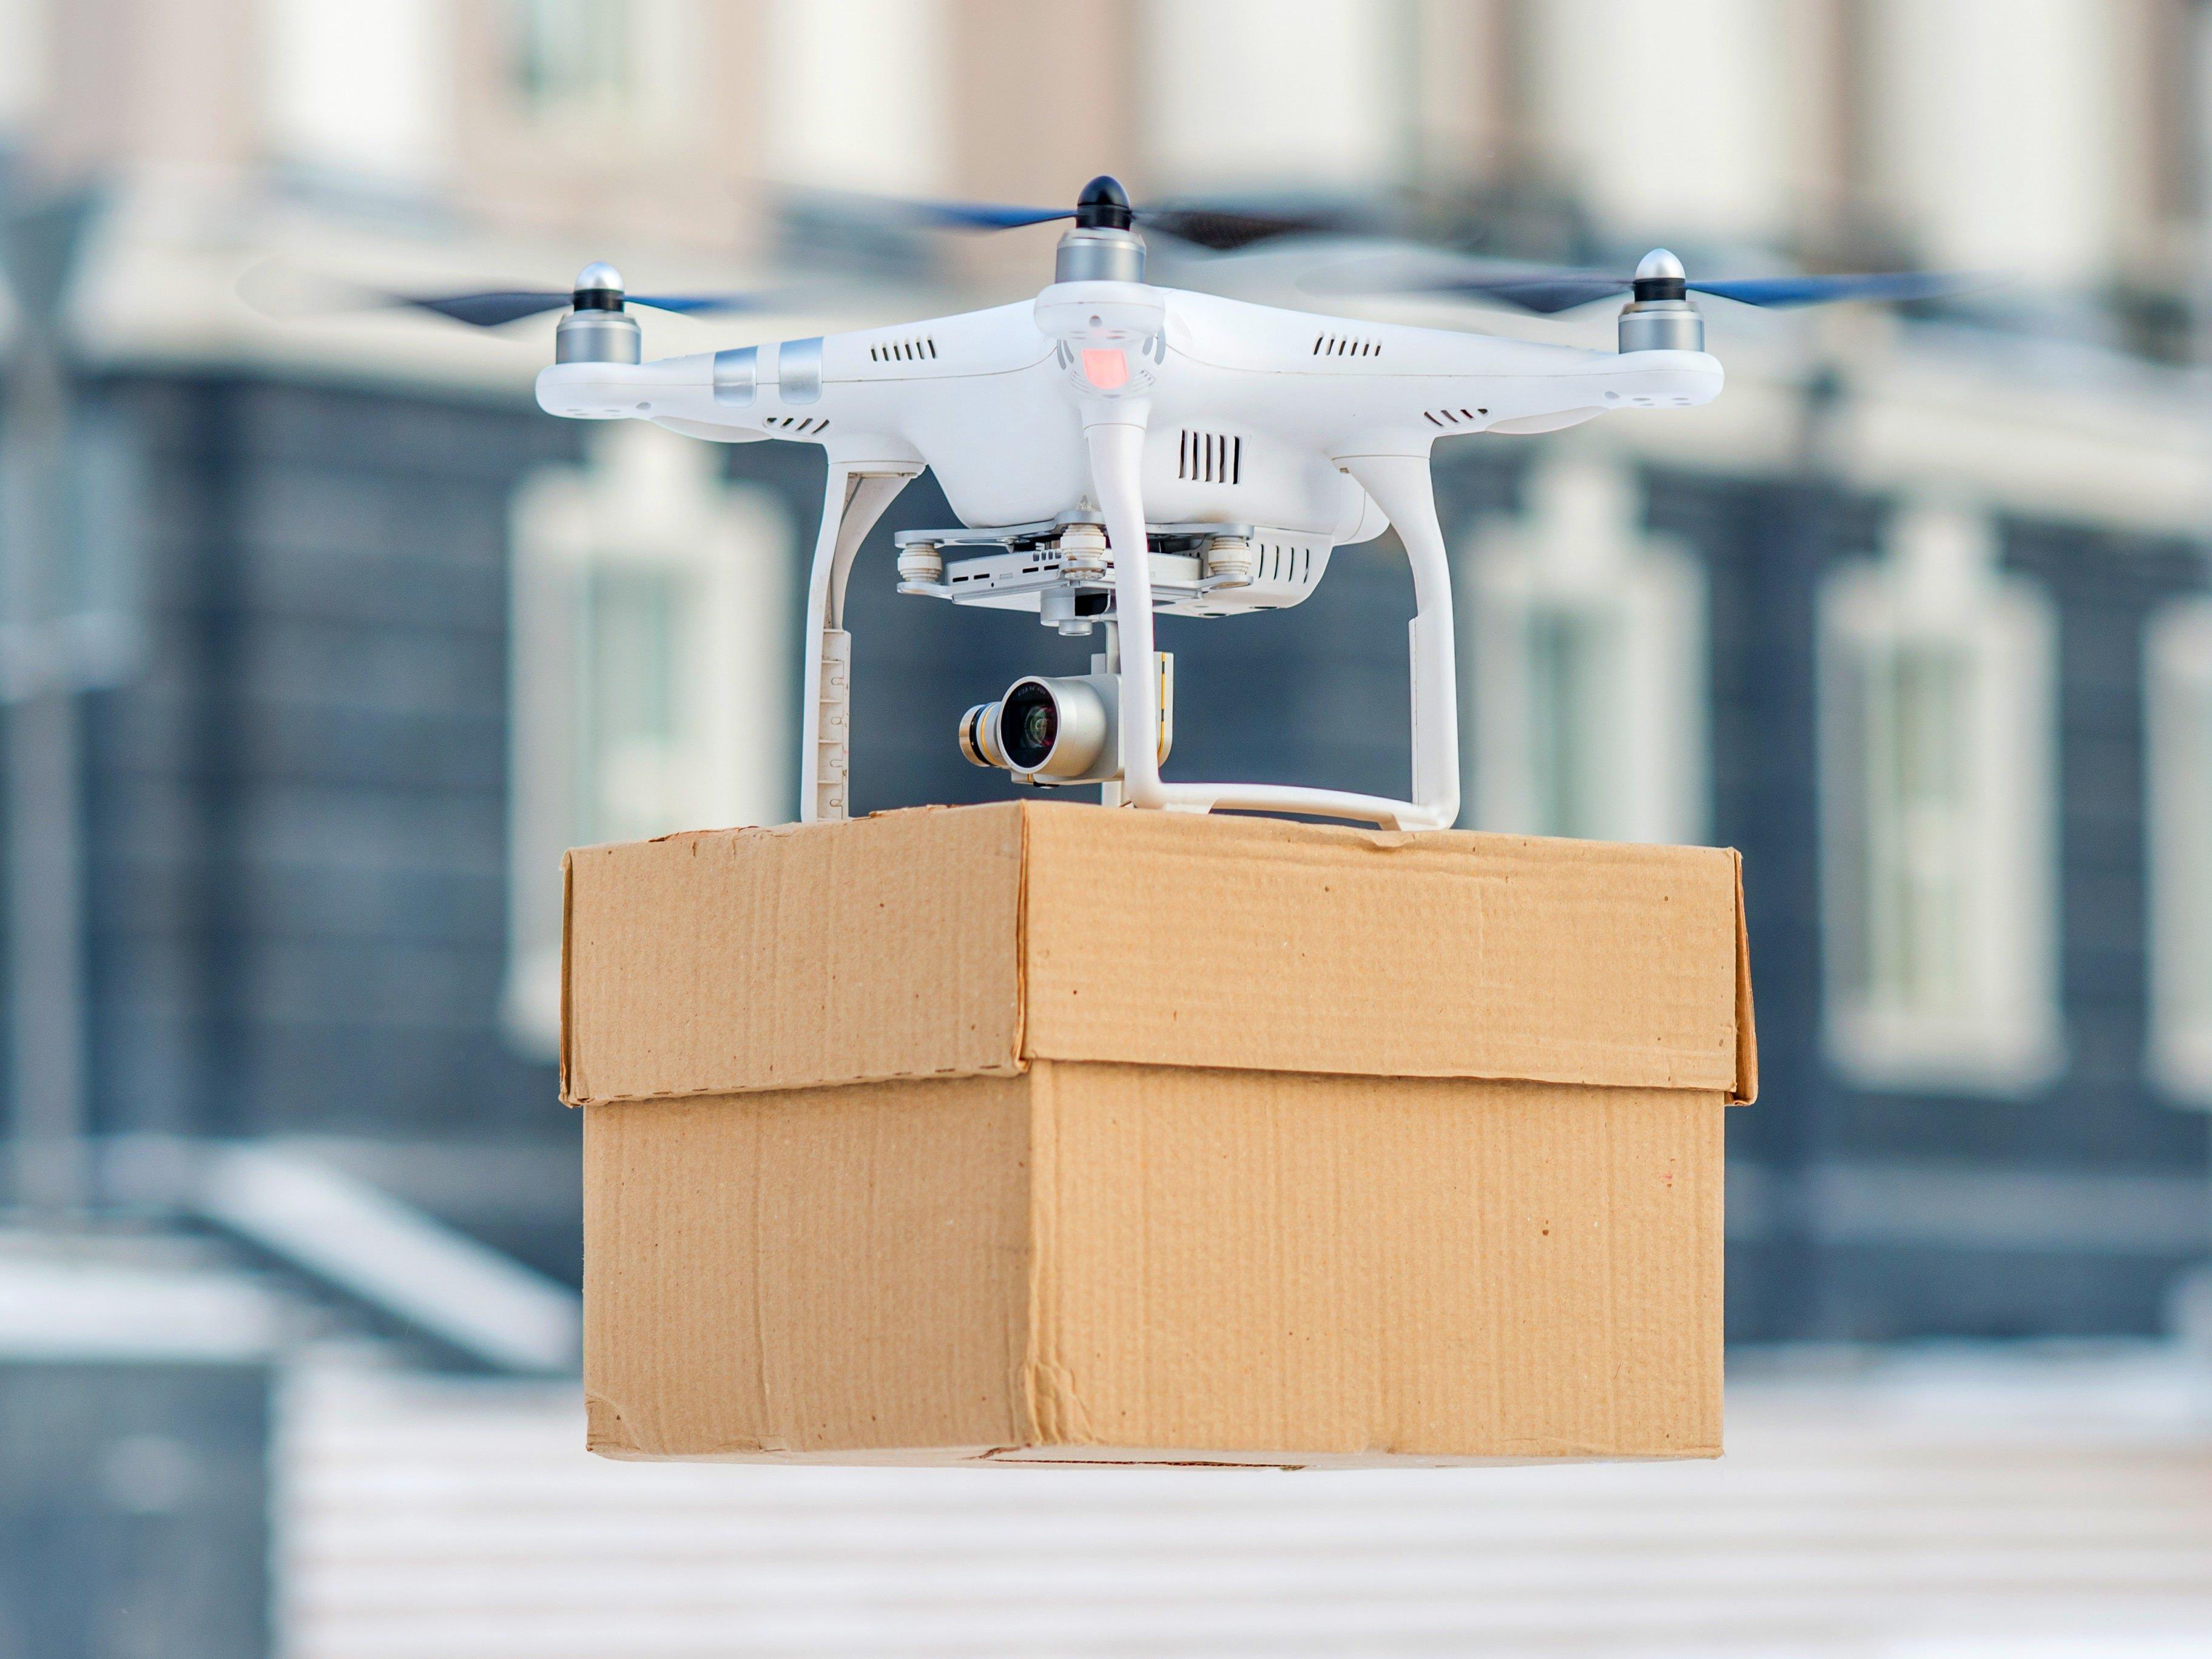 Paketzustellungen per Drohne - ein Zukunftsmodell?